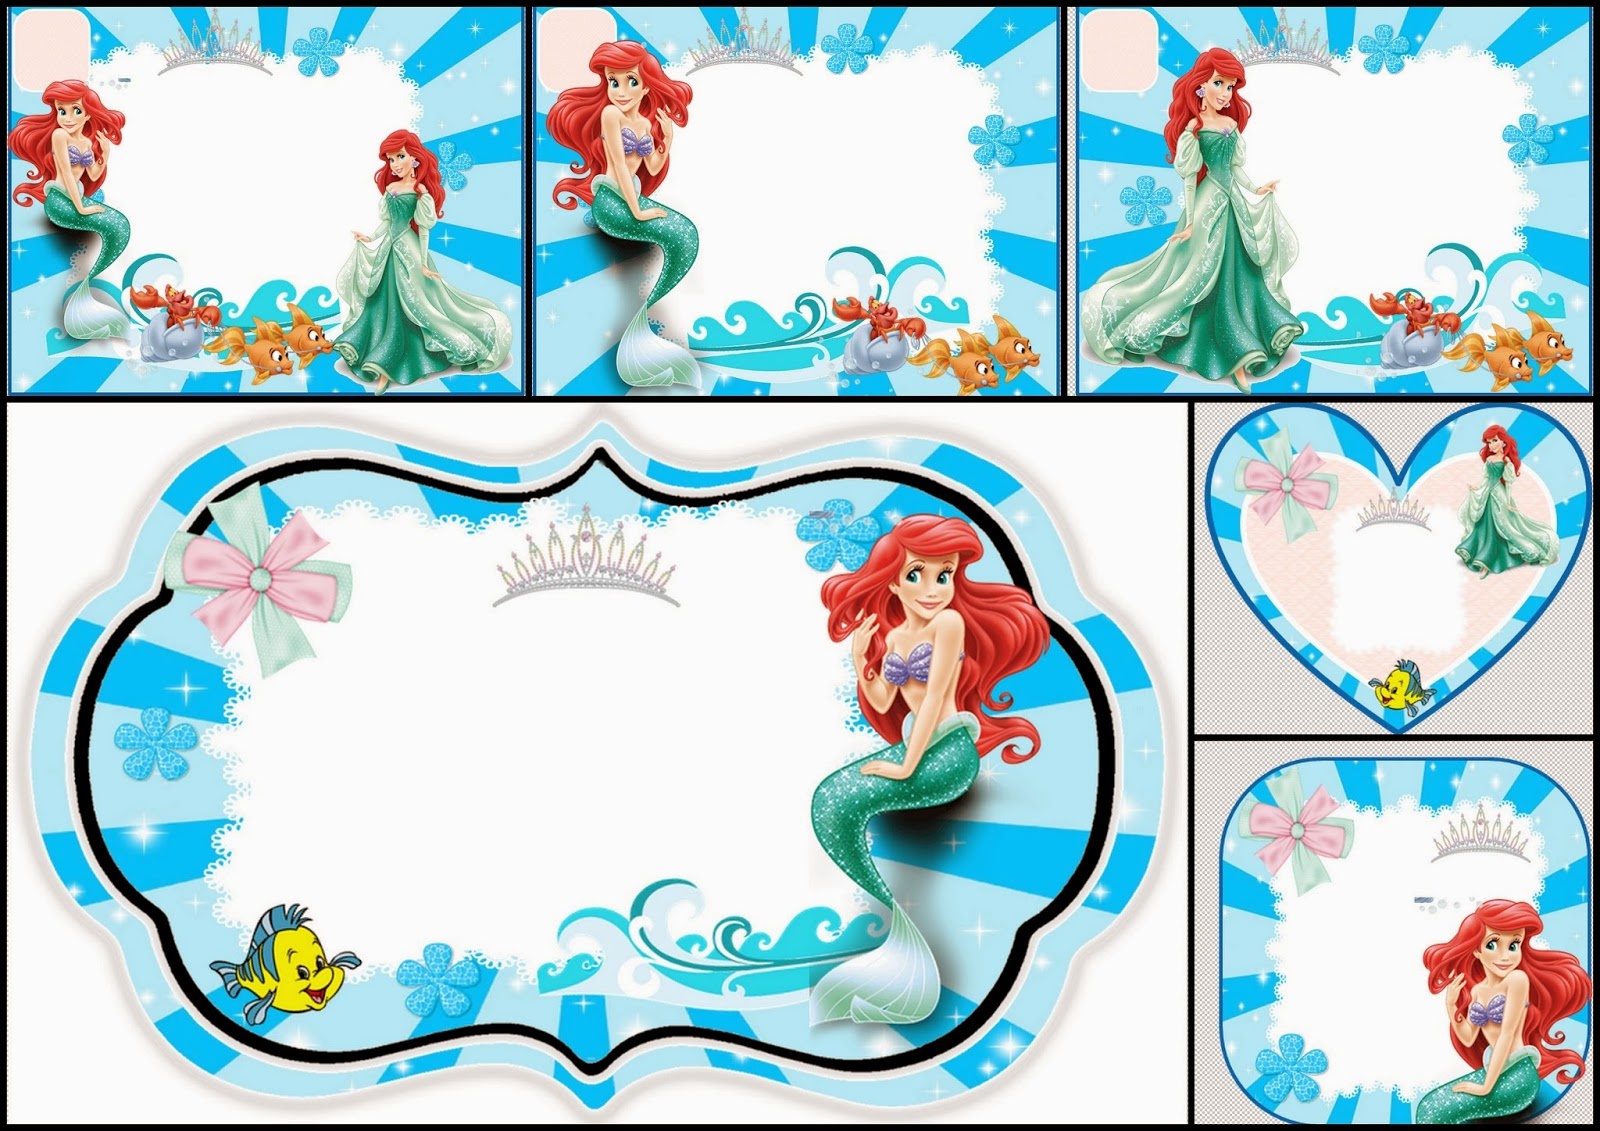 The Little Mermaid Free Printable Invitations, Cards Or Photo Frames - Free Little Mermaid Printable Invitations